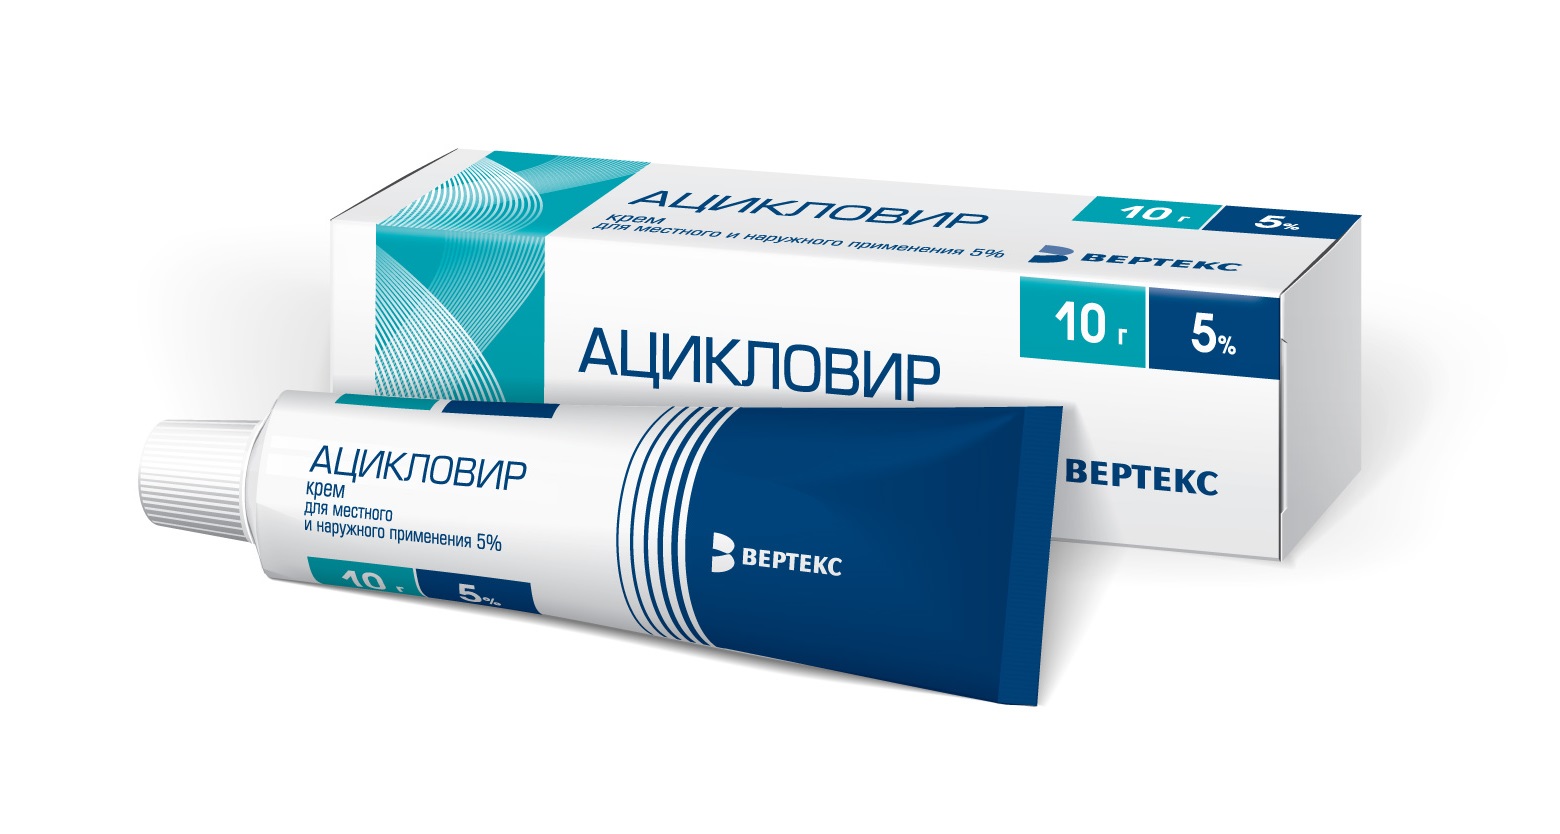 «ацикловир» (таблетки): цена, инструкция по применению, отзыв врача и аналоги